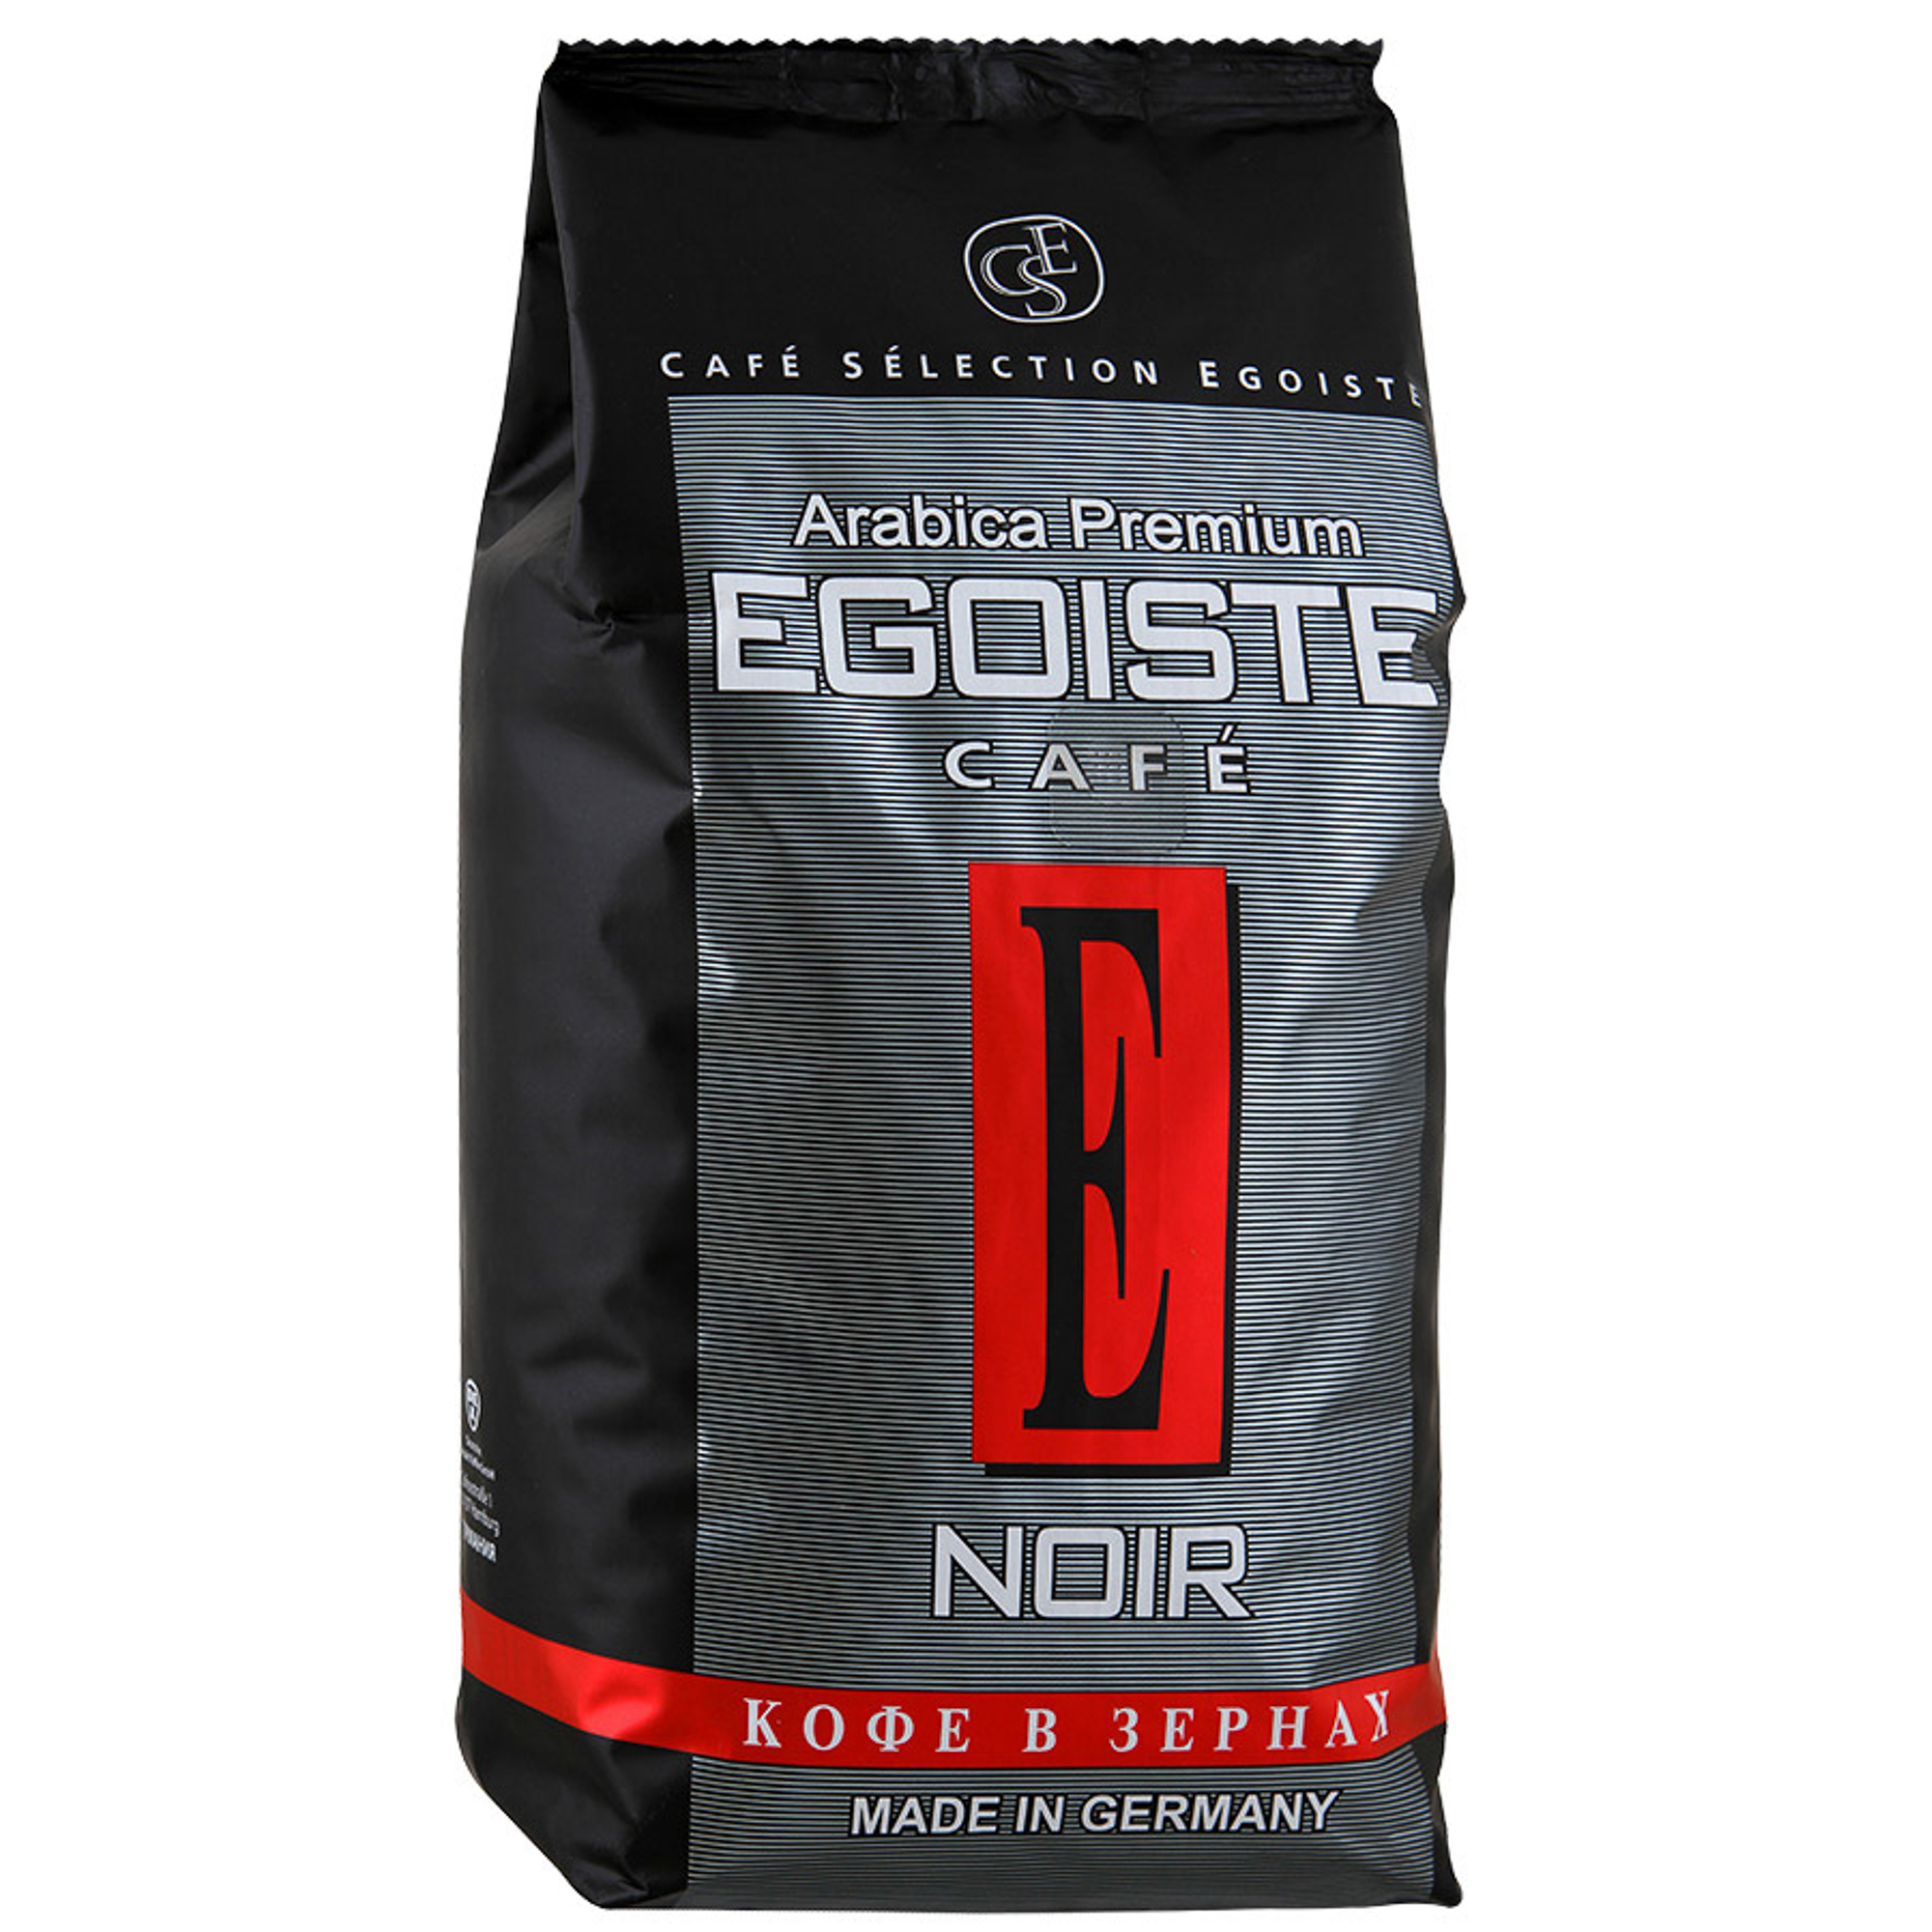 Кофе в зернах Egoiste Noir 1 кг кофе в зернах saquella major 1 кг